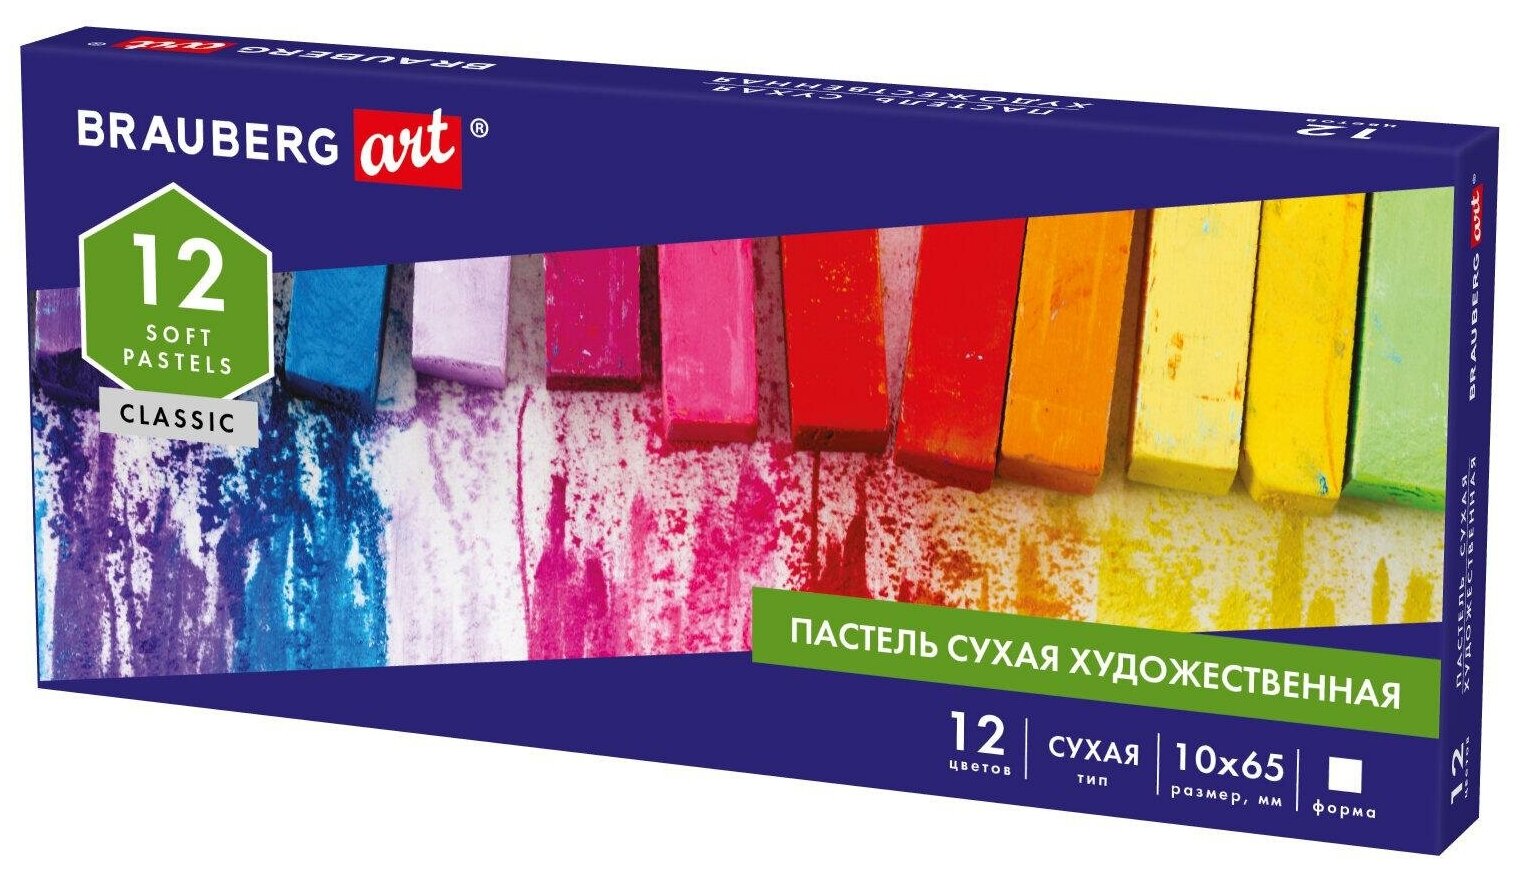 Пастель сухая художественная для рисования Brauberg Art Classic 12 цветов квадратное сечение